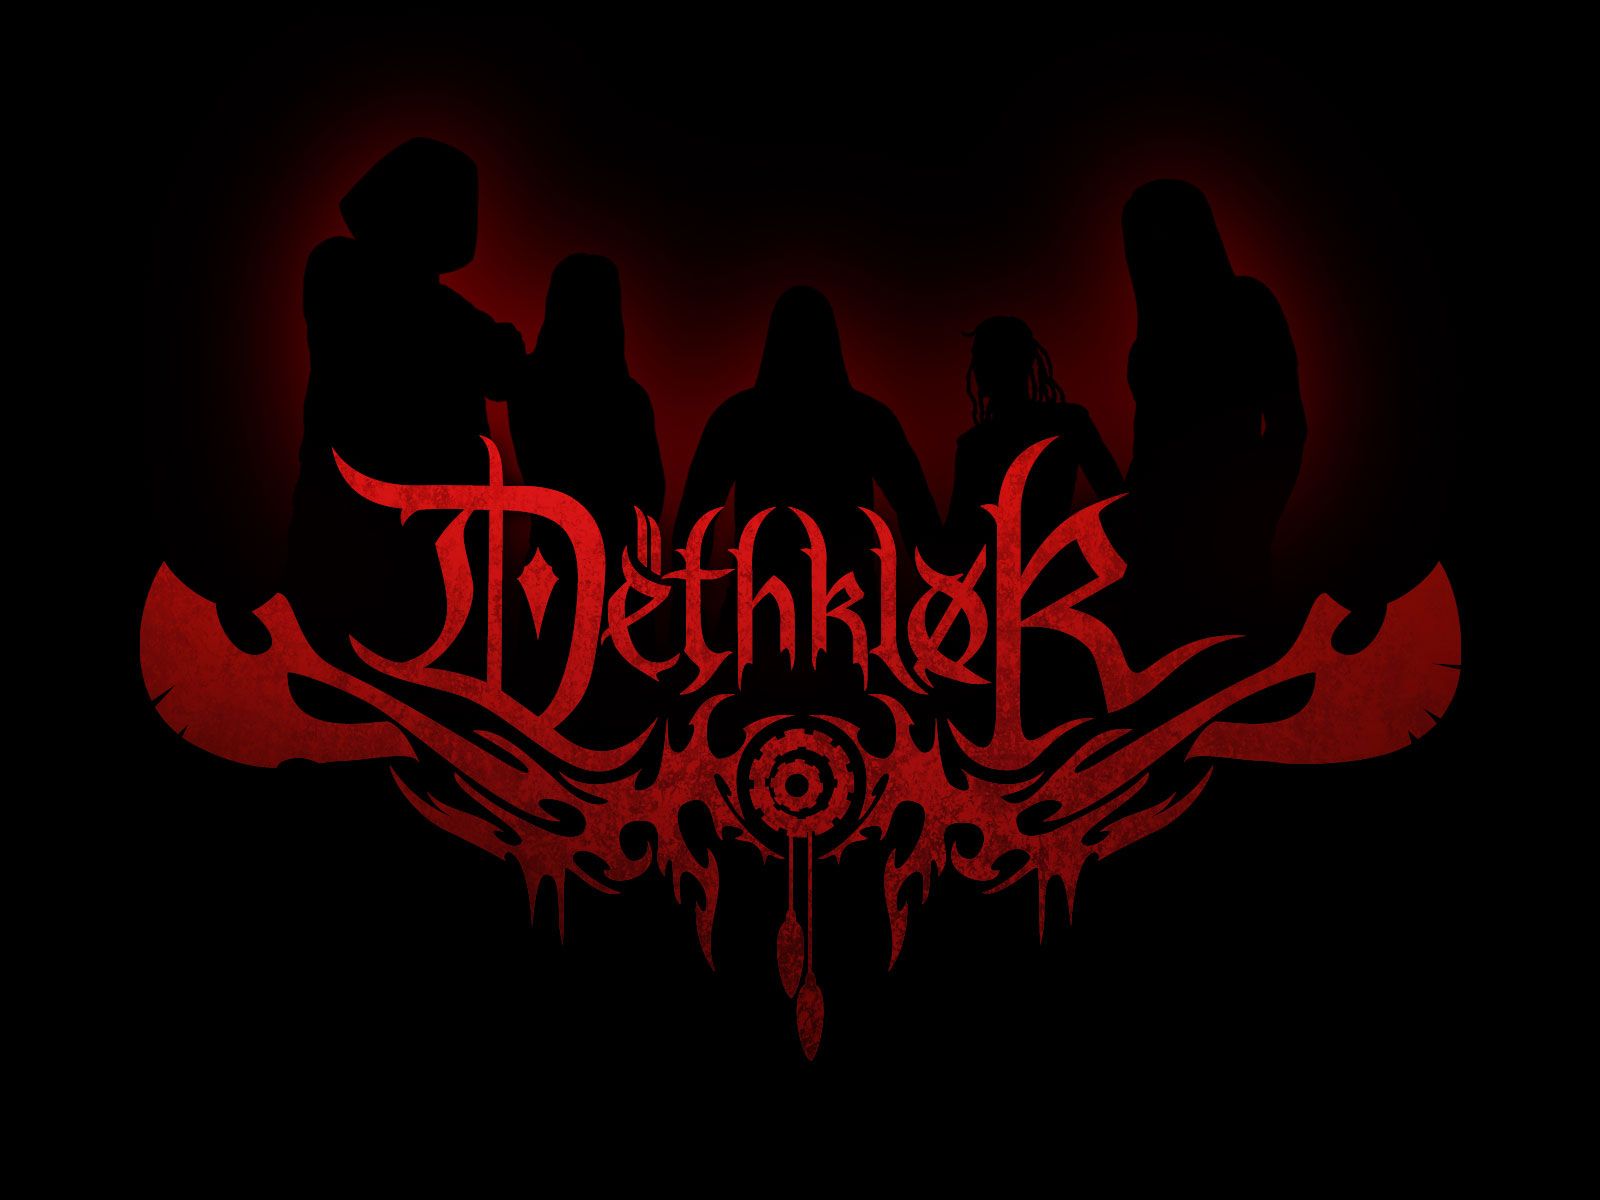 Download Metal Slayer Behemoth Rock Music Guns Roses - Dethklok Wallpaper Hd - HD Wallpaper 